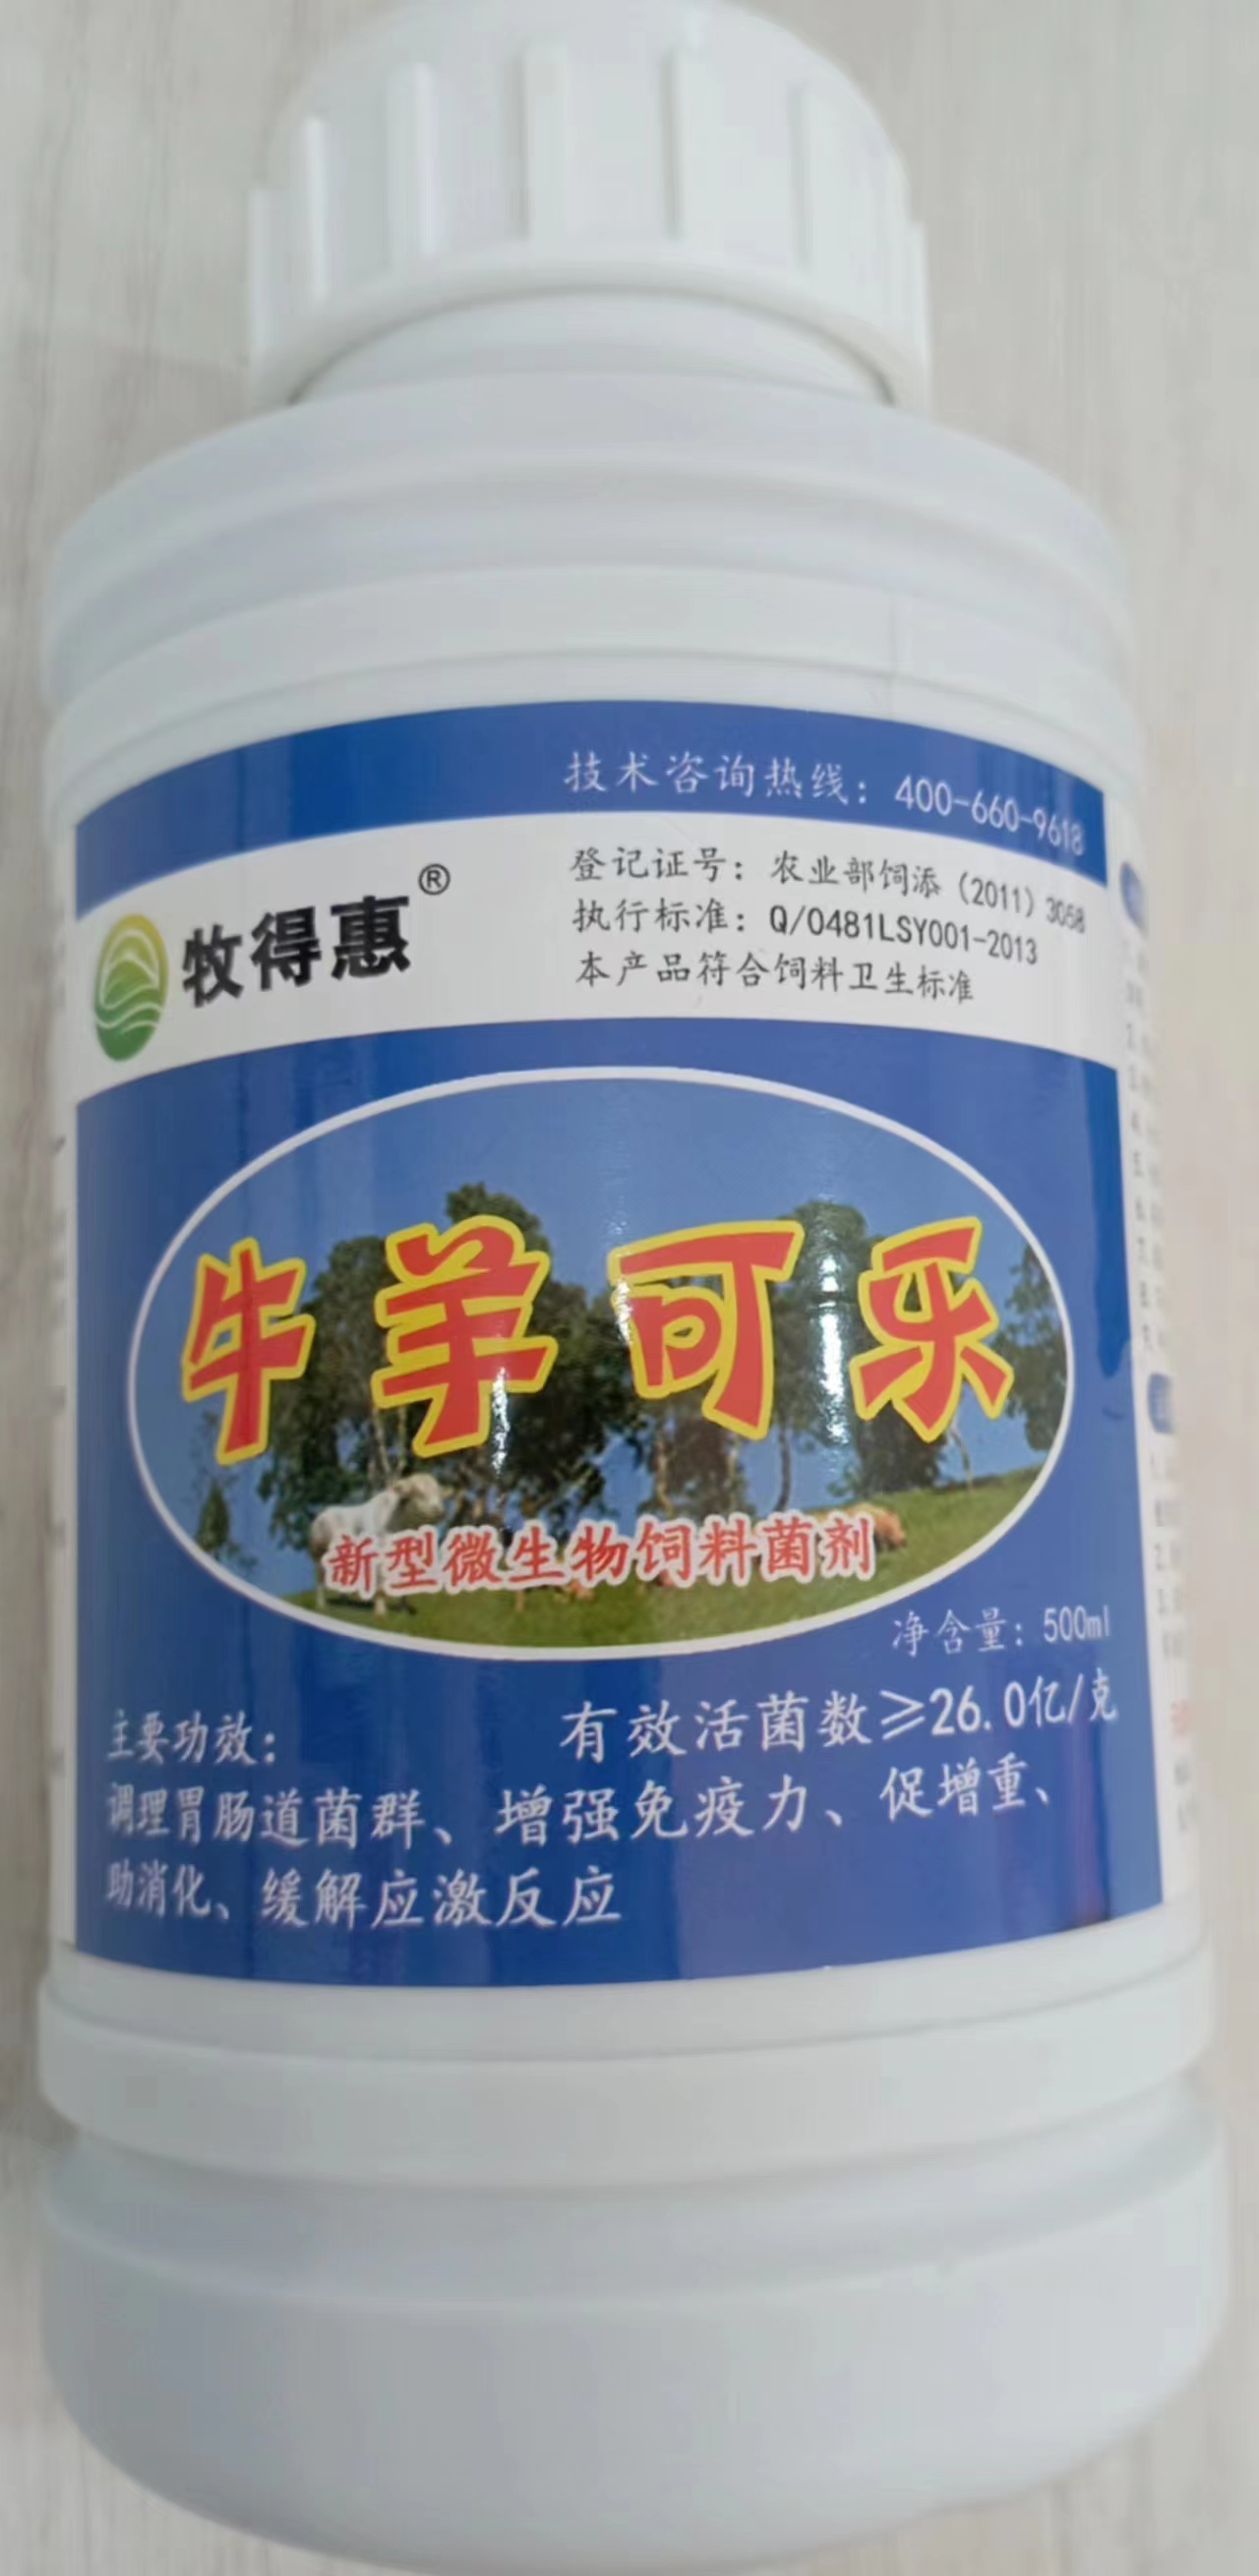 天津牧得惠厂家牛羊可乐预防牛中暑拉稀热应激调理胃肠道